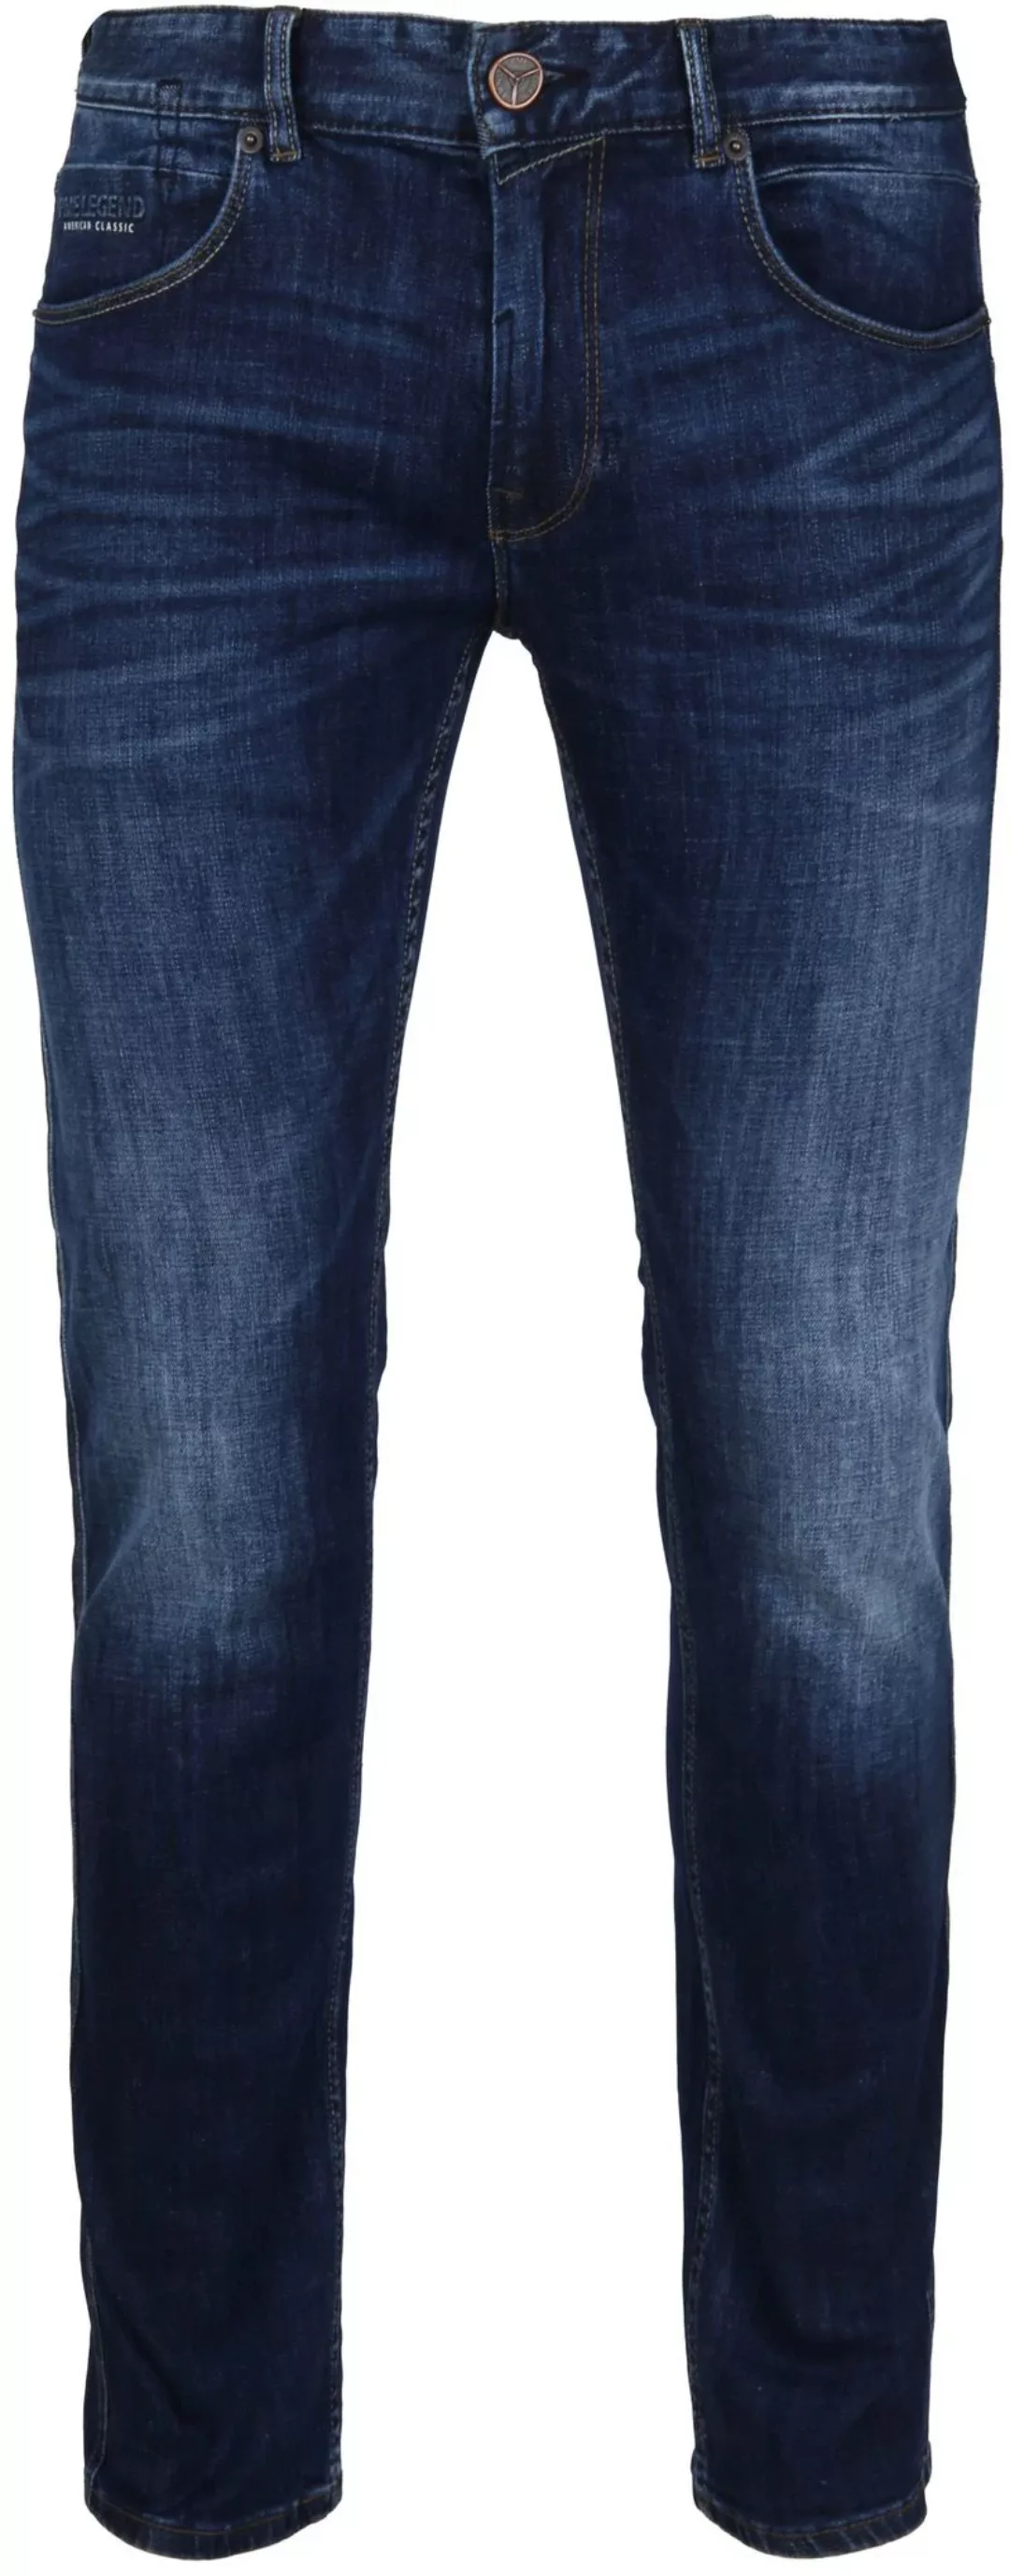 PME Legend Nightflight Jeans Dunkelblau - Größe W 32 - L 36 günstig online kaufen